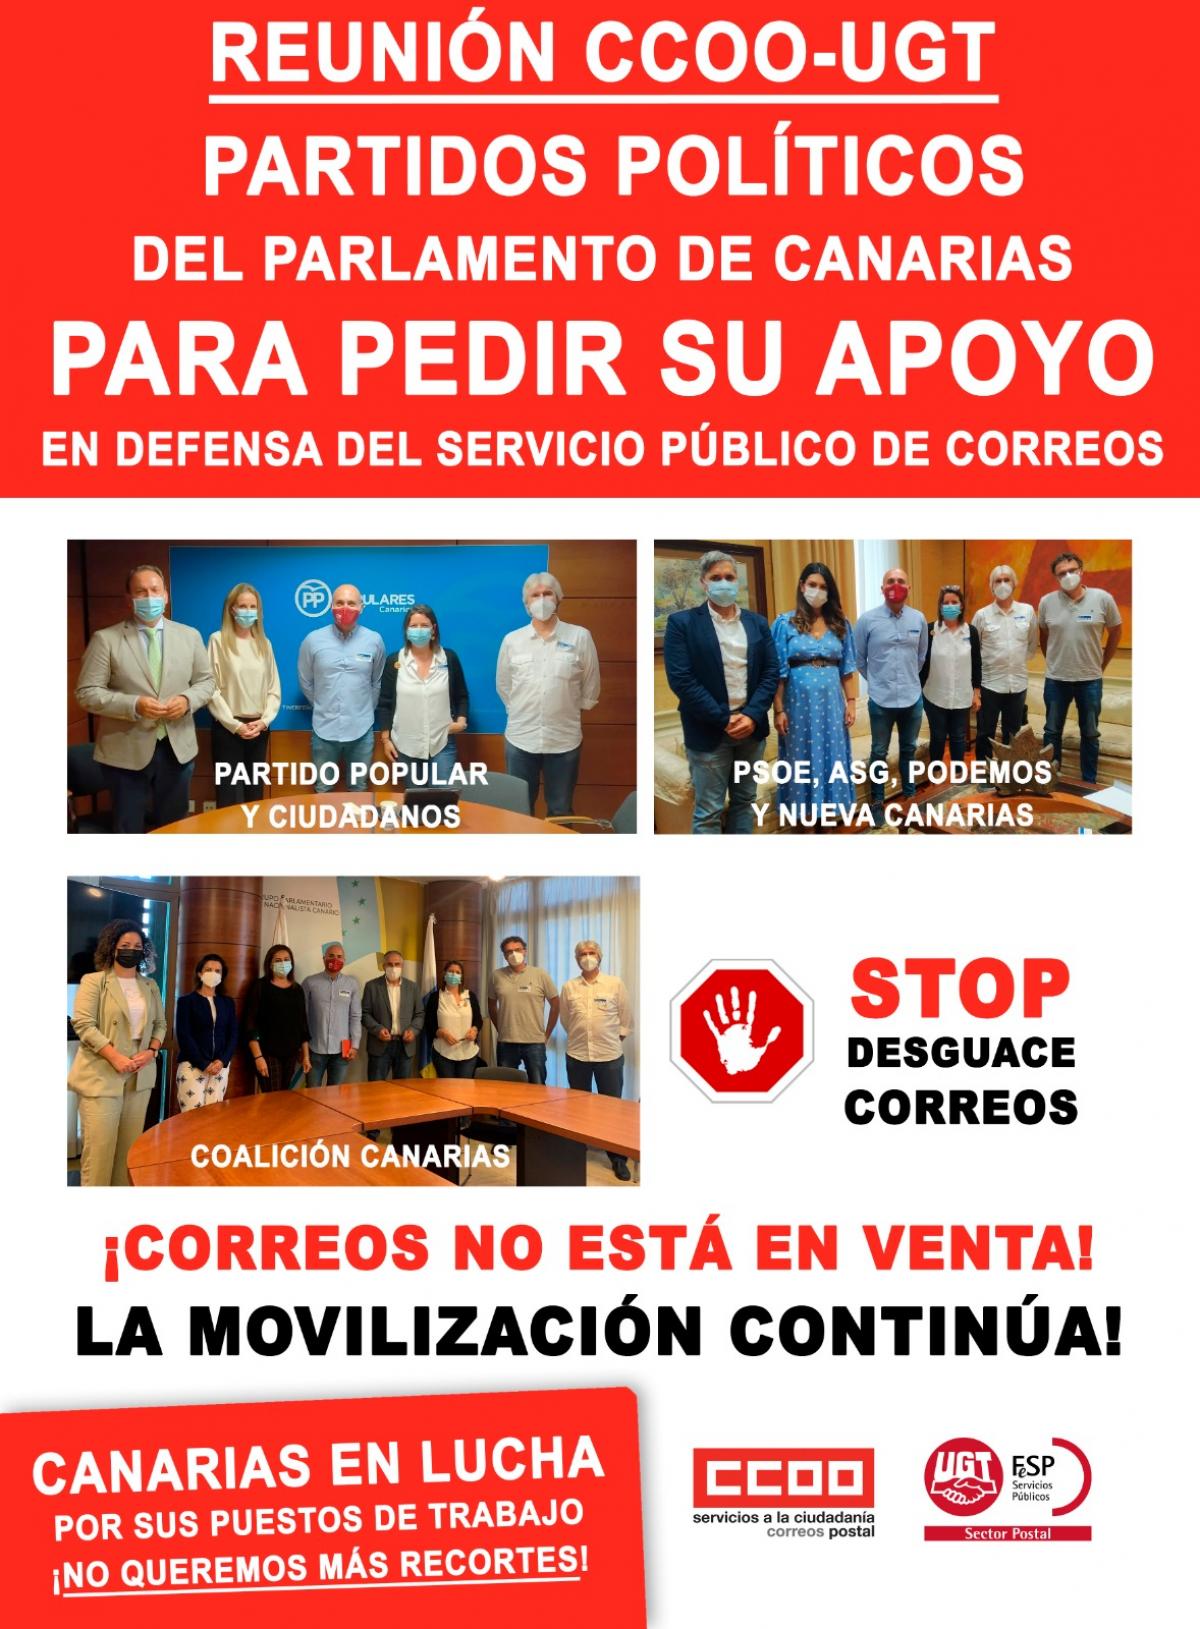 CCOO Y UGT llevan al Parlamento canario la defensa del correo pblico en Canarias